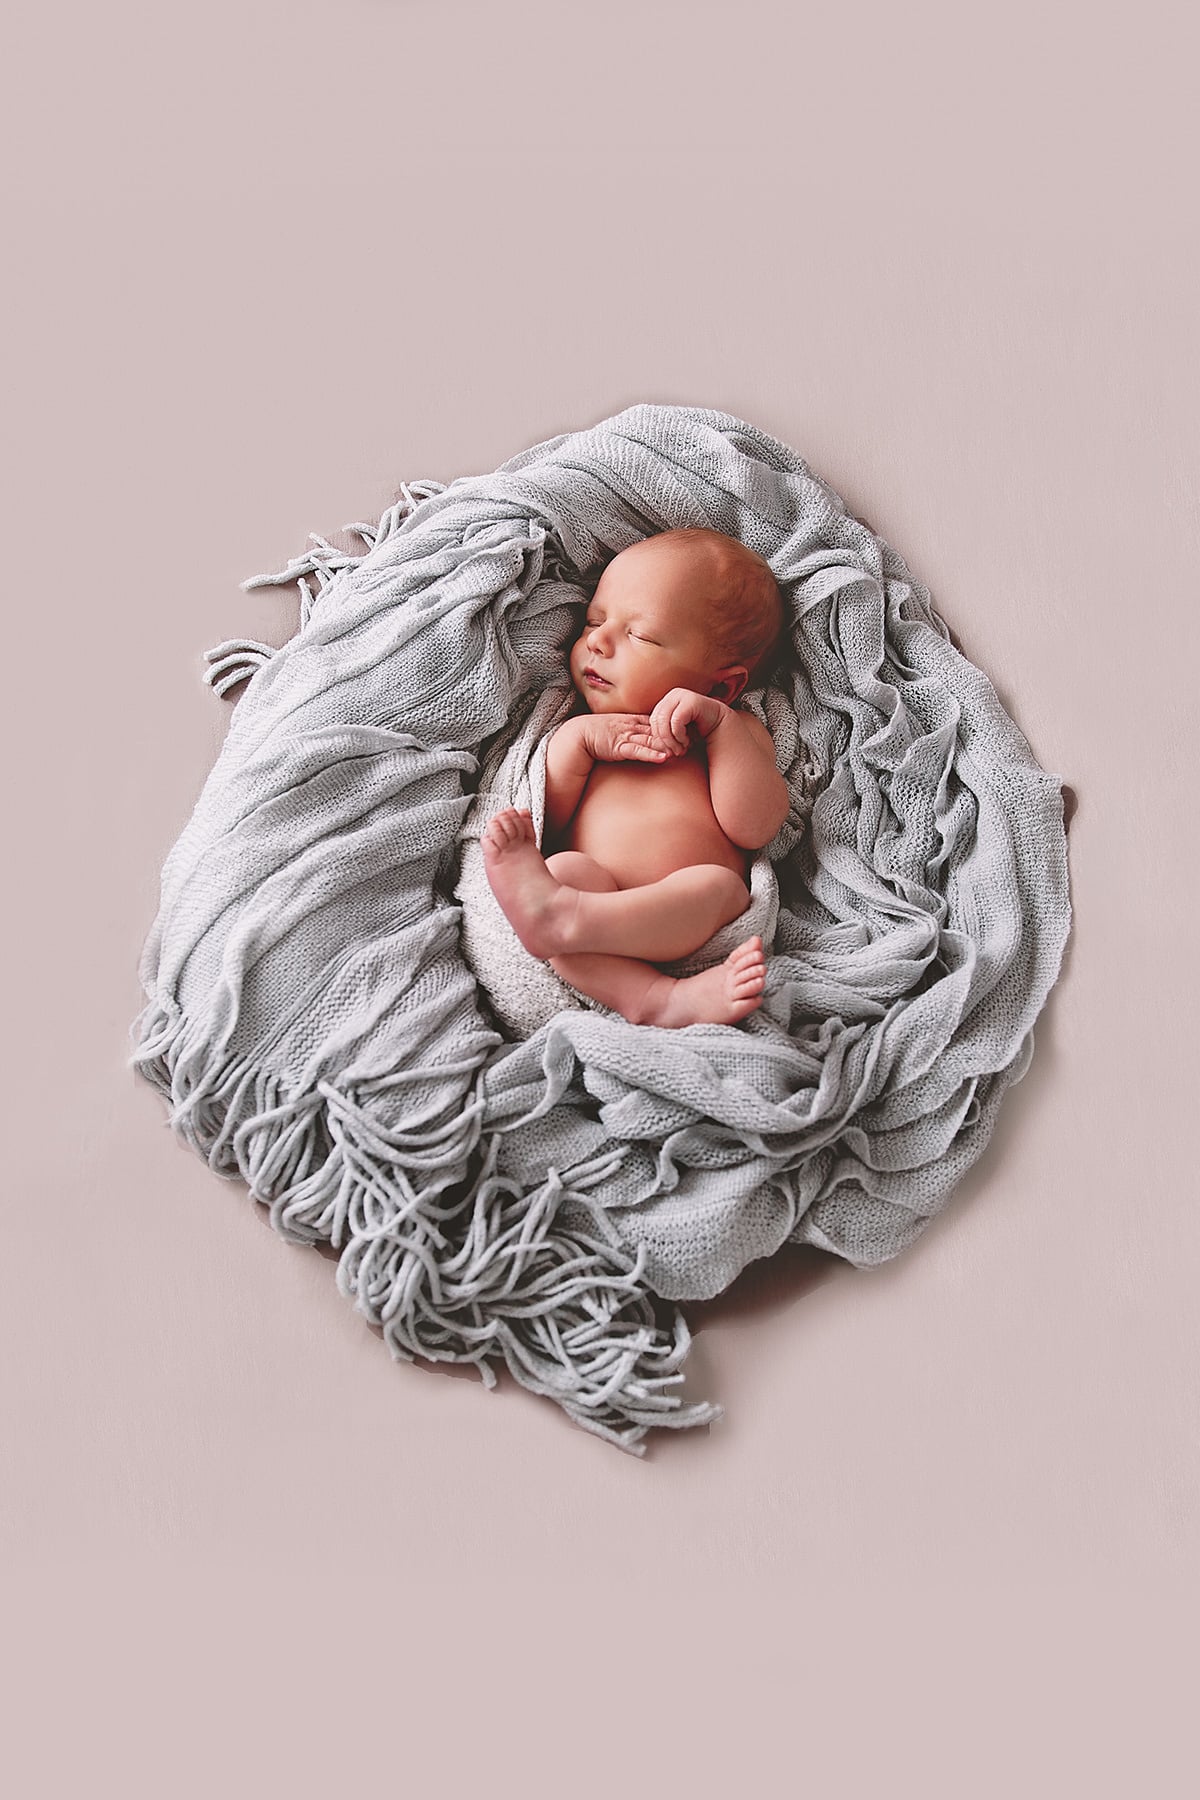 newborn in a blanket nest